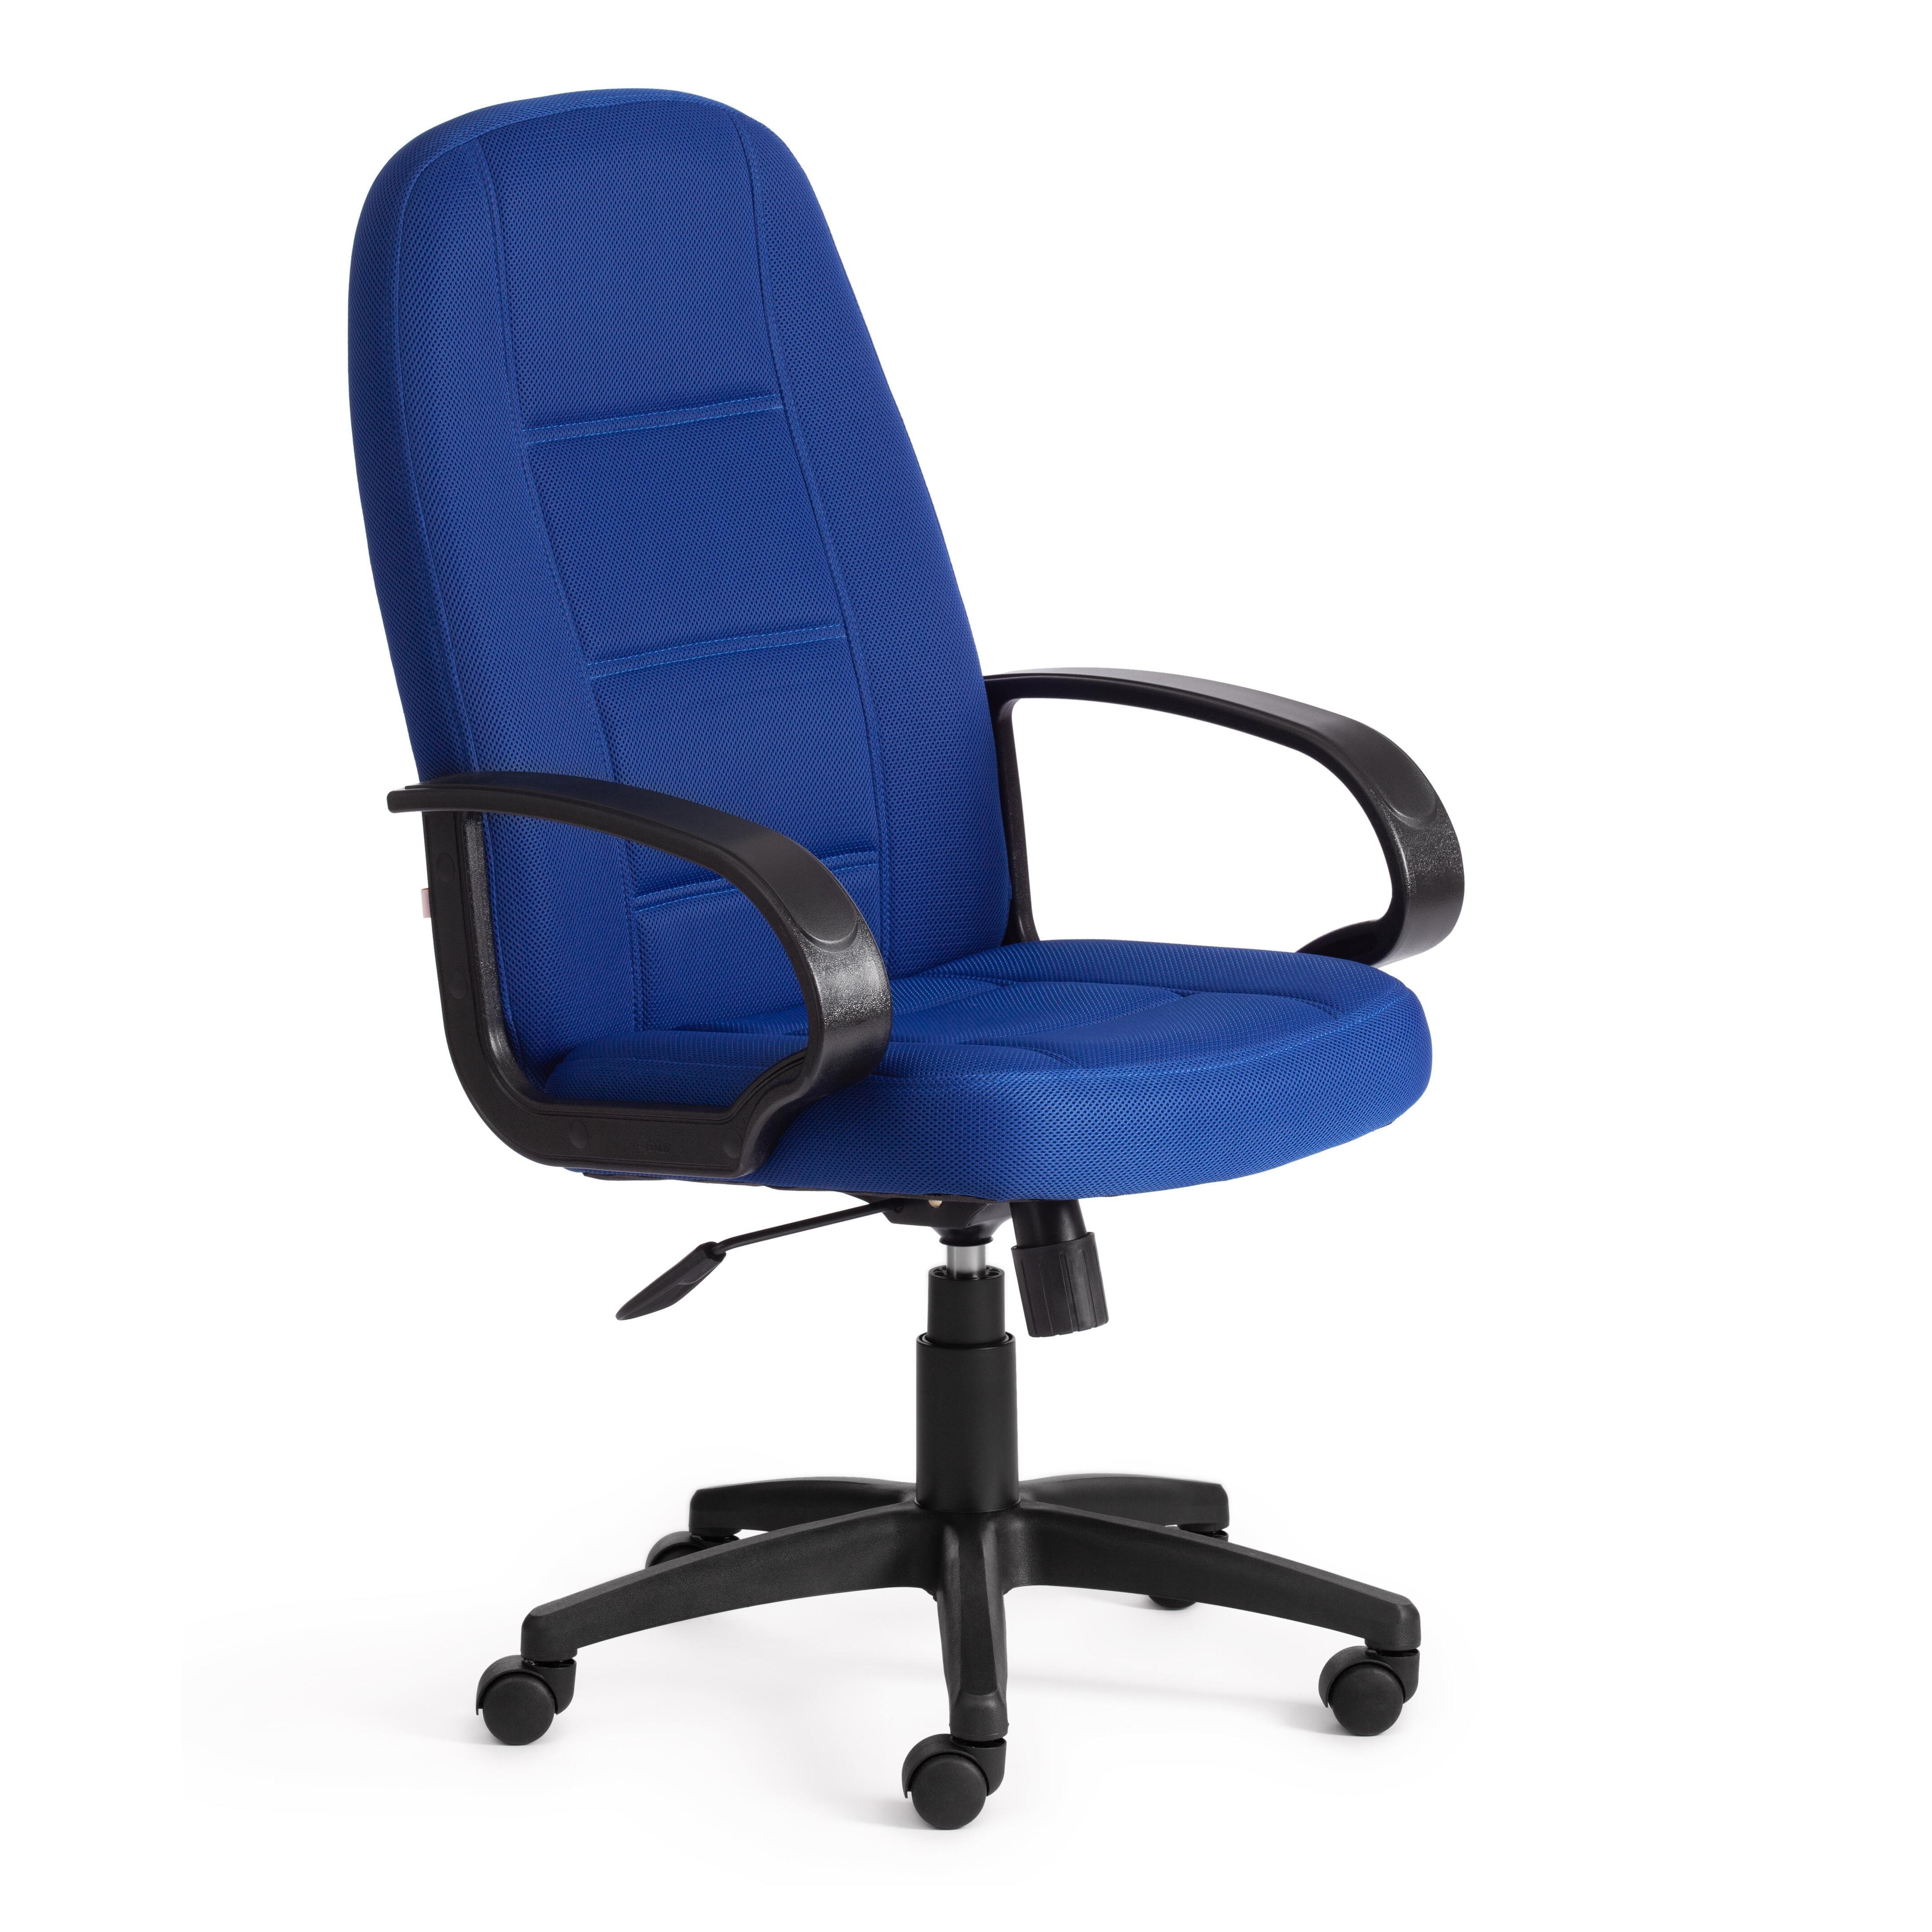 90447387 Офисное кресло сн747 ткань цвет синий 17196 STLM-0226053 TETCHAIR